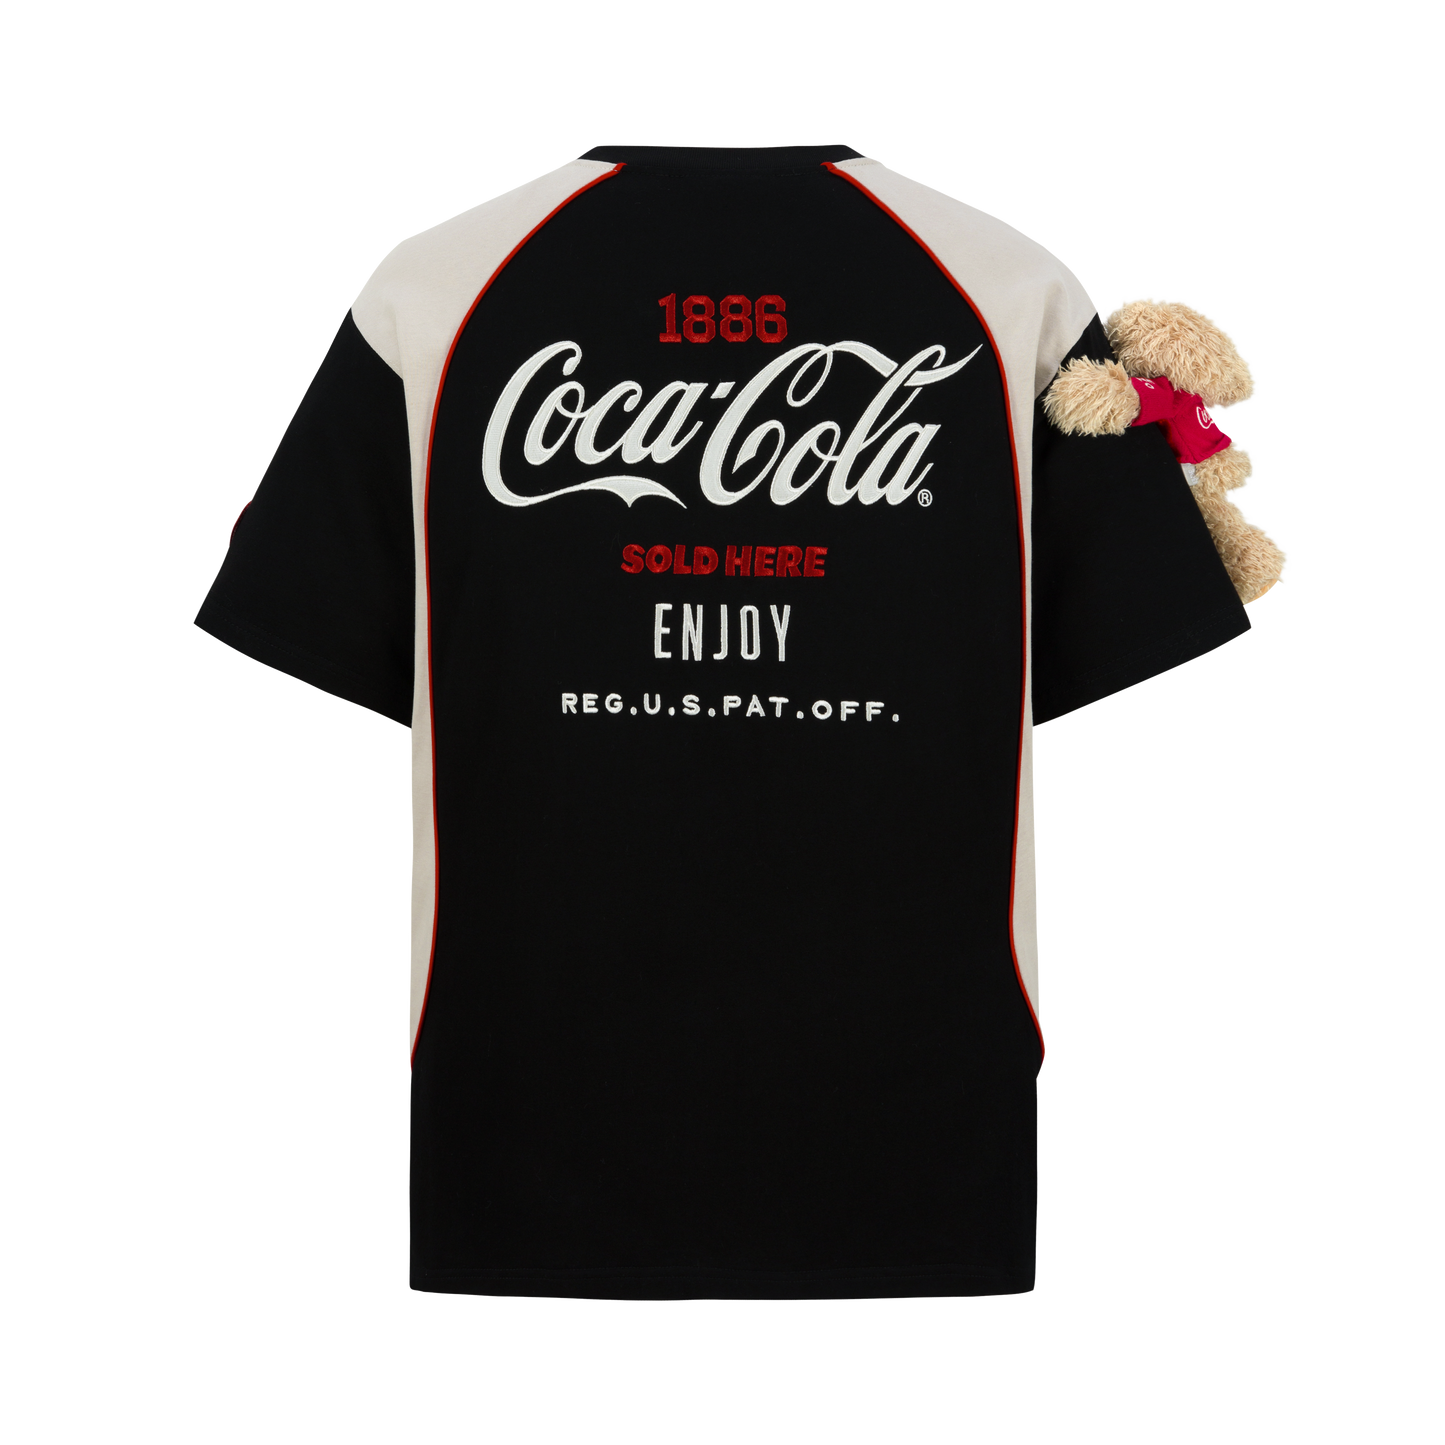 13DE MARZO Coca-Cola Bear Racing T-shirt